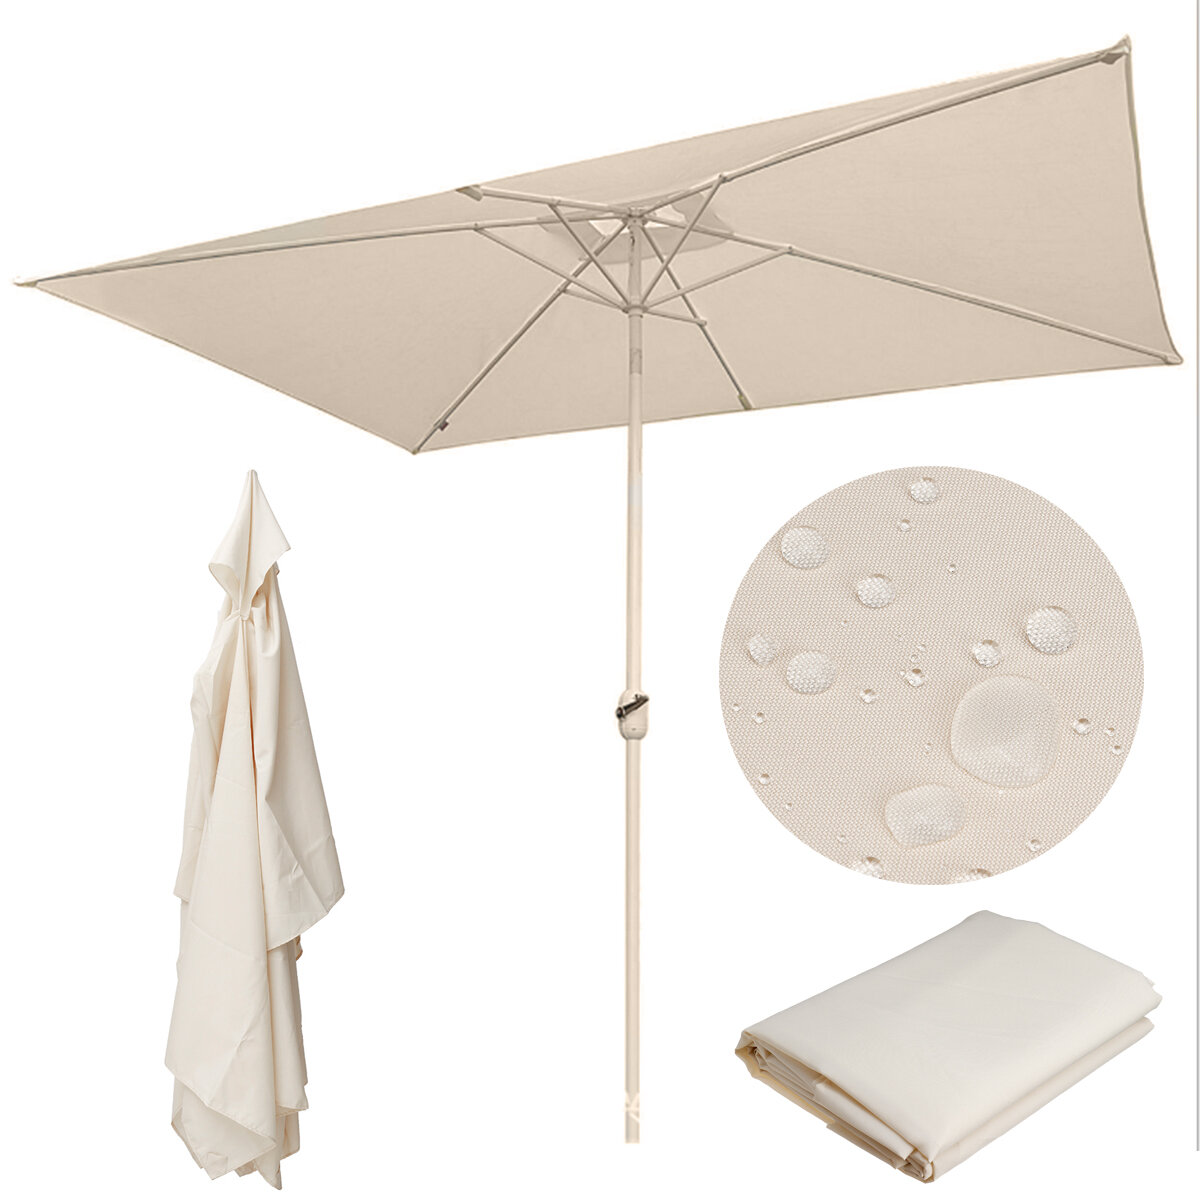 10ft x 6.6ft 6 Ribben Patio Paraplu Luifel Vervanging Parasol Zonnescherm Top Cover Waterdicht UV Be